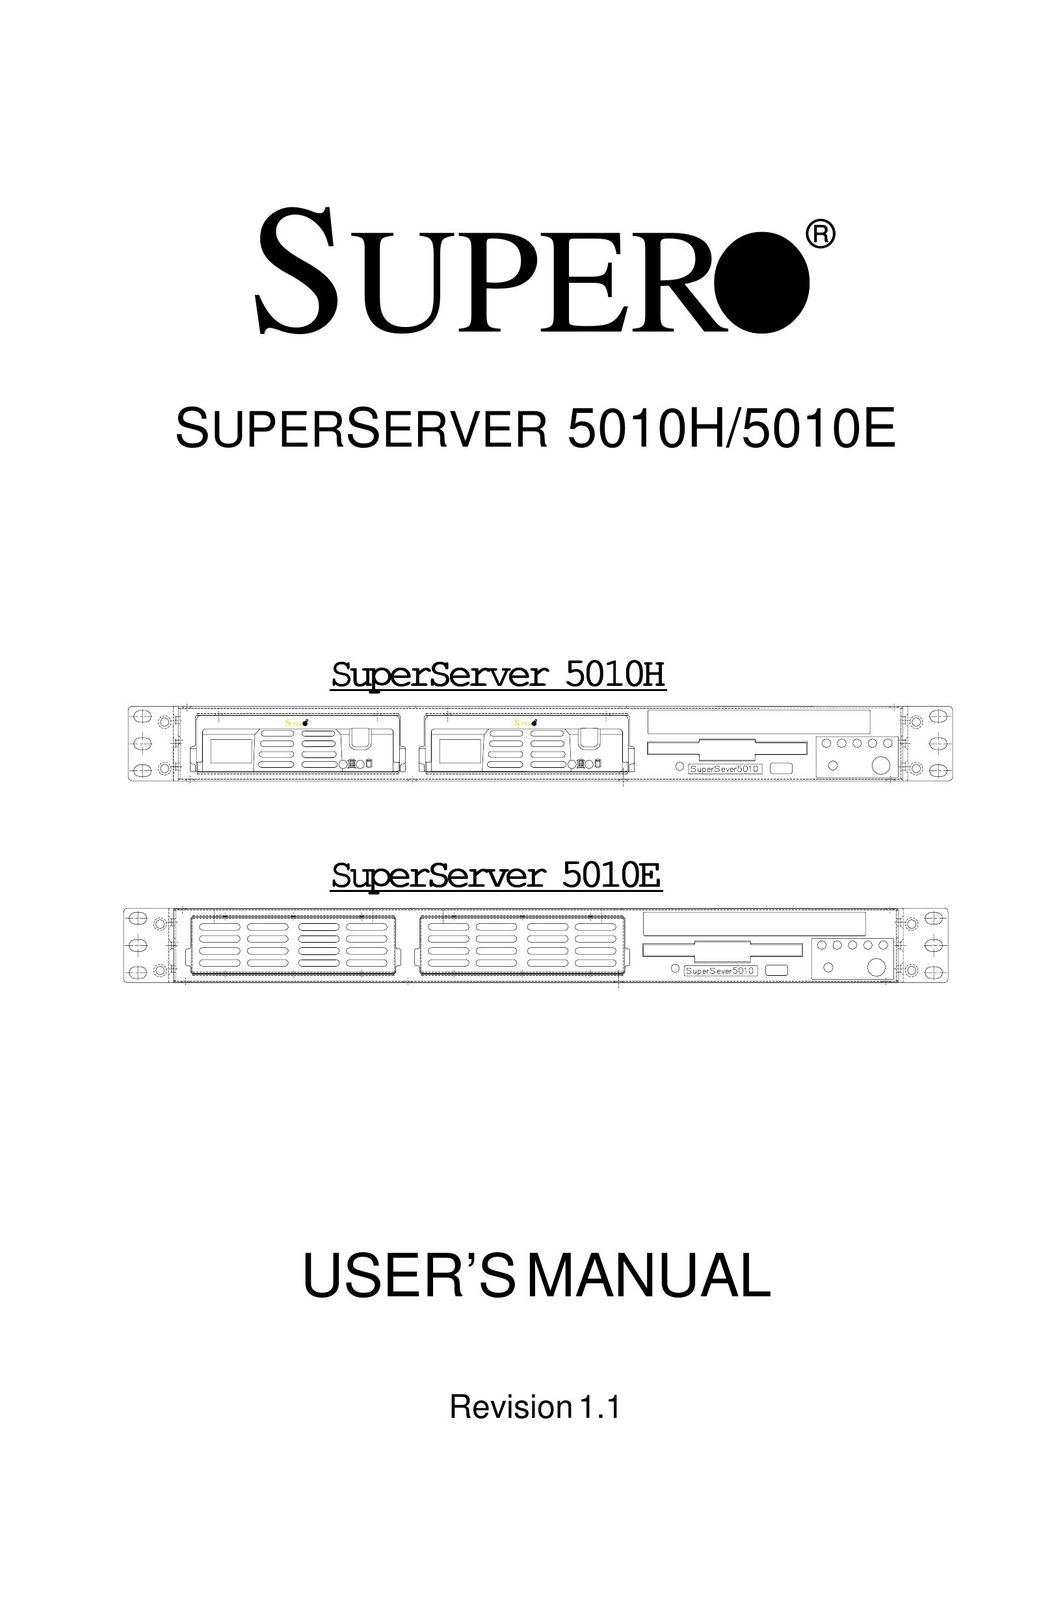 SUPER MICRO Computer 5010E Network Card User Manual